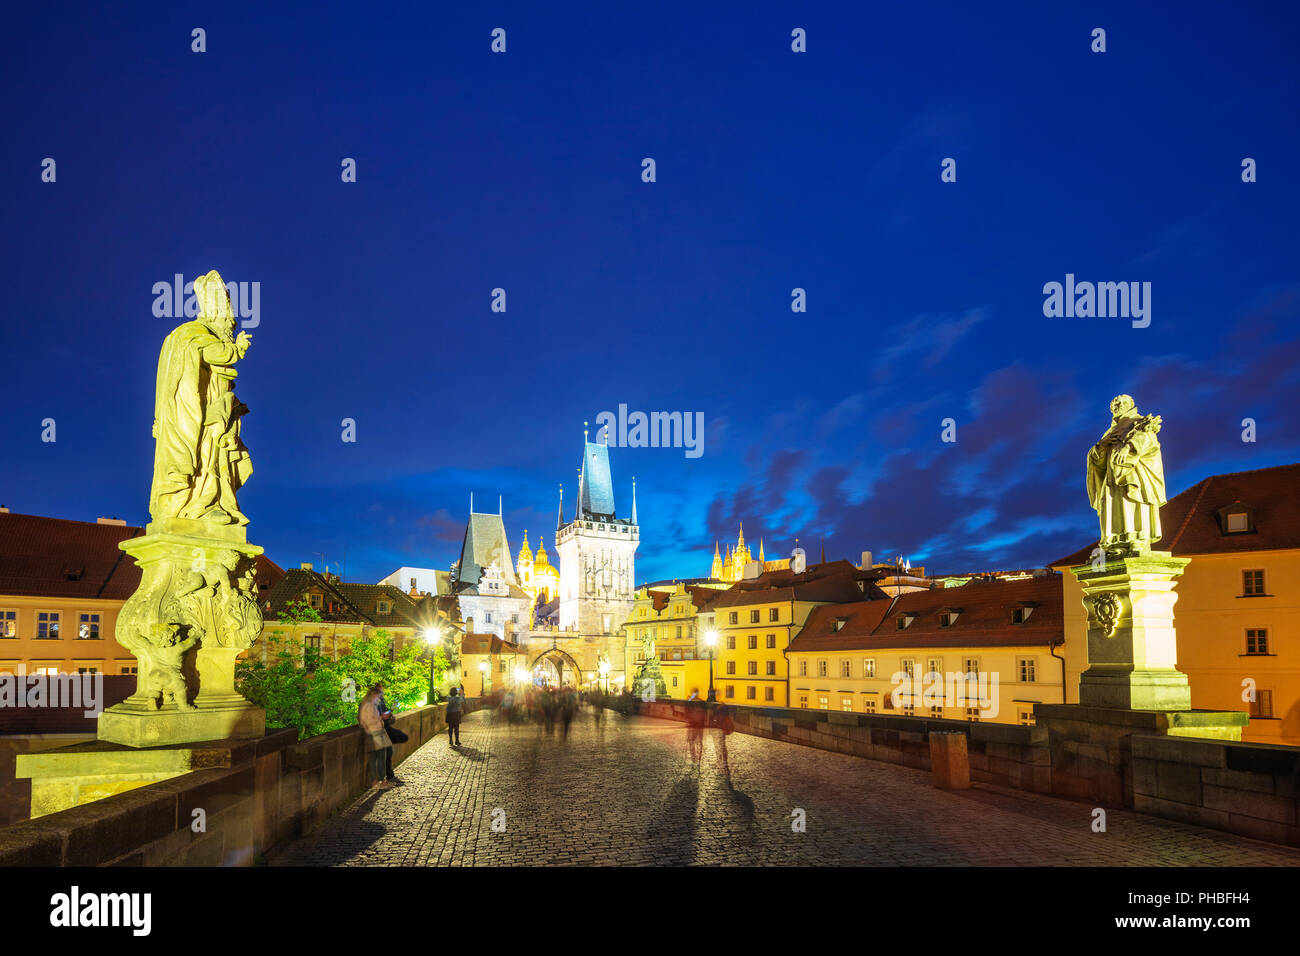 Im 14. Jahrhundert die Karlsbrücke, Prager Burg und der St. Veitsdom, Prag, UNESCO-Weltkulturerbe, Böhmen, Tschechische Republik, Europa Stockfoto